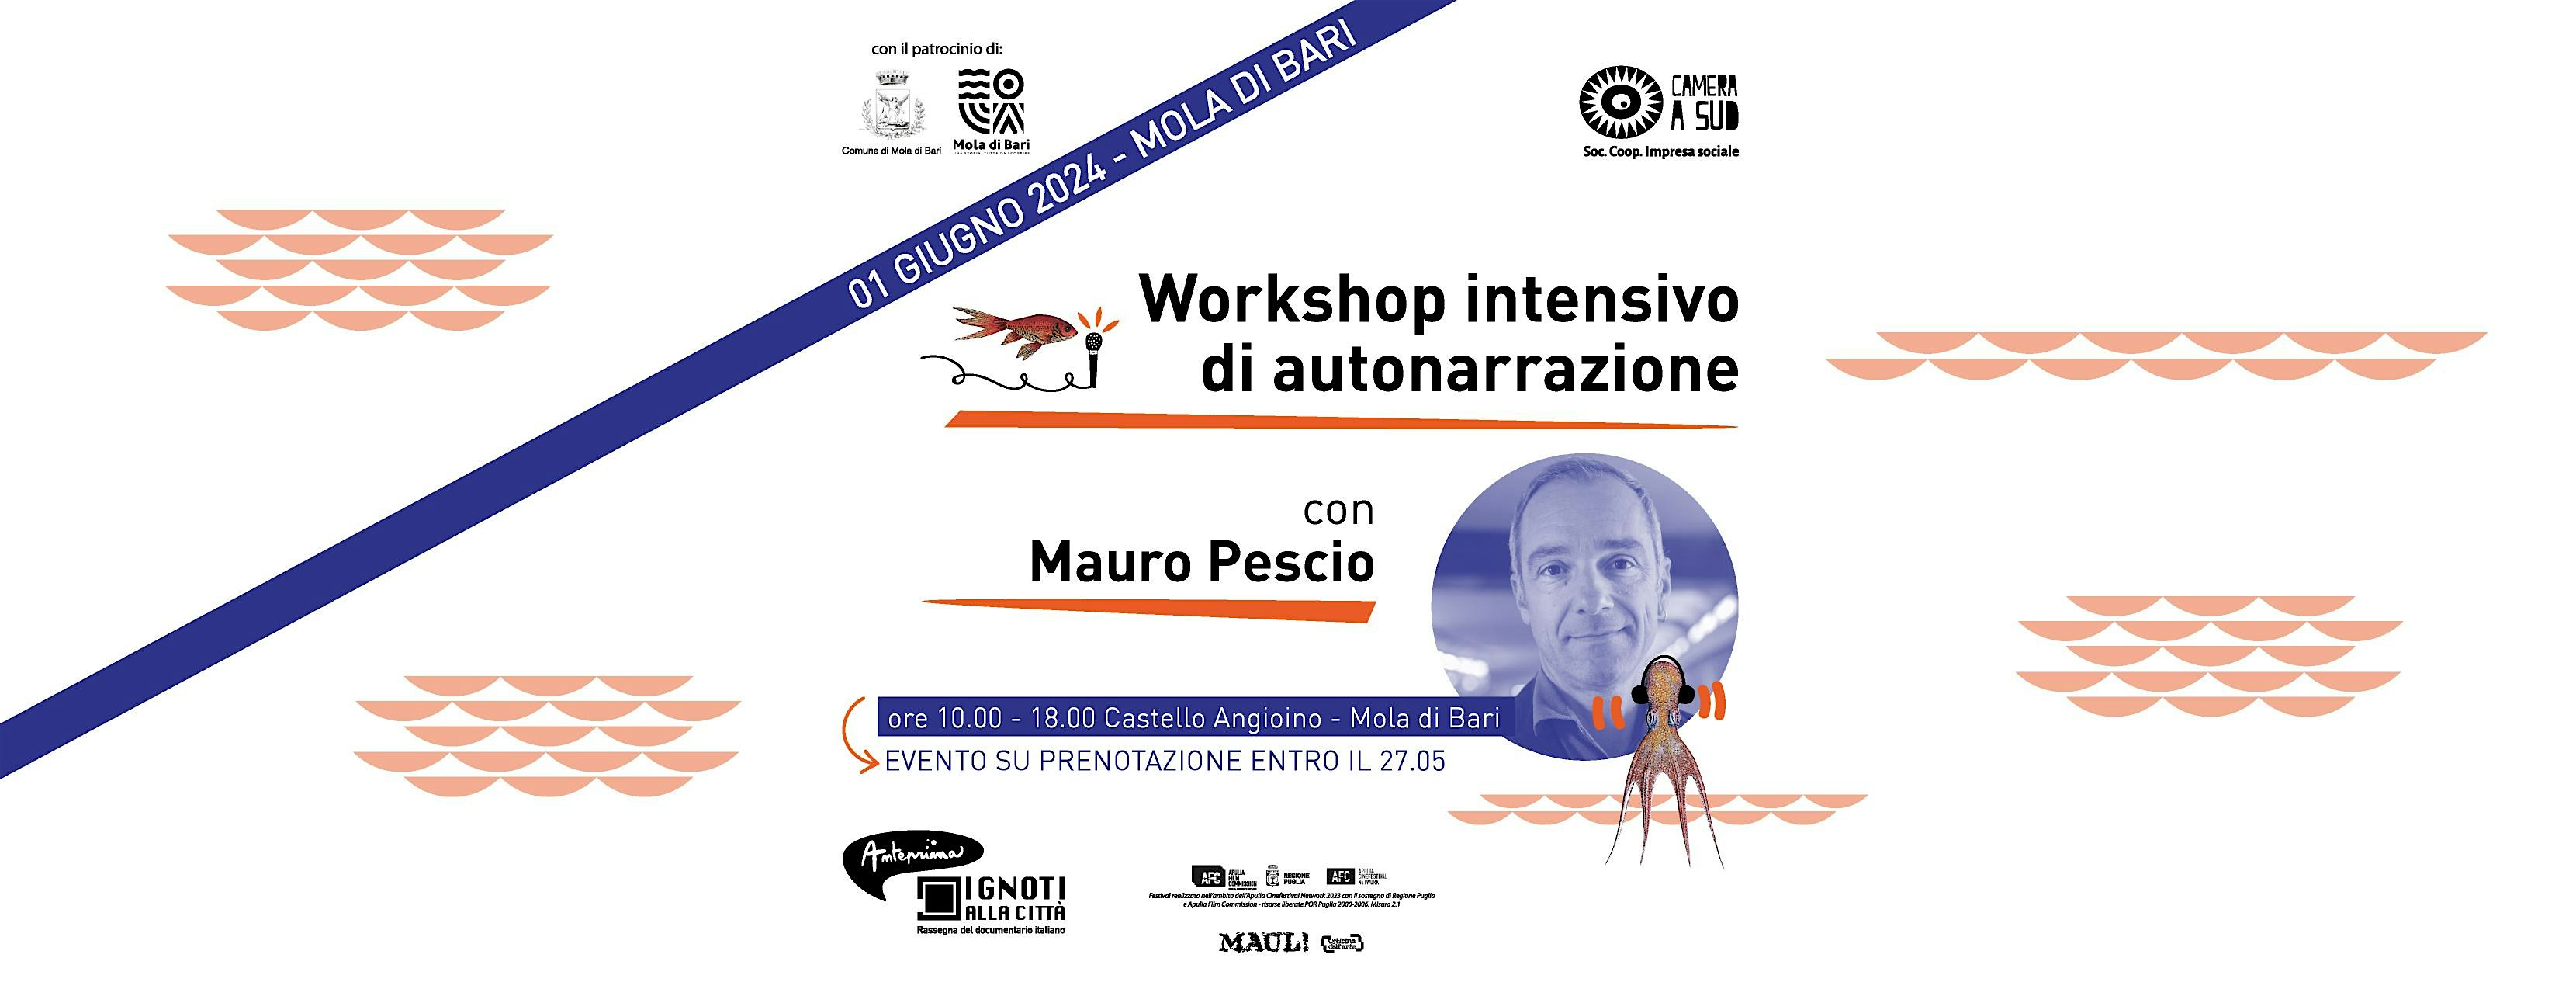 Workshop intensivo di audio narrazione con Mauro Pescio